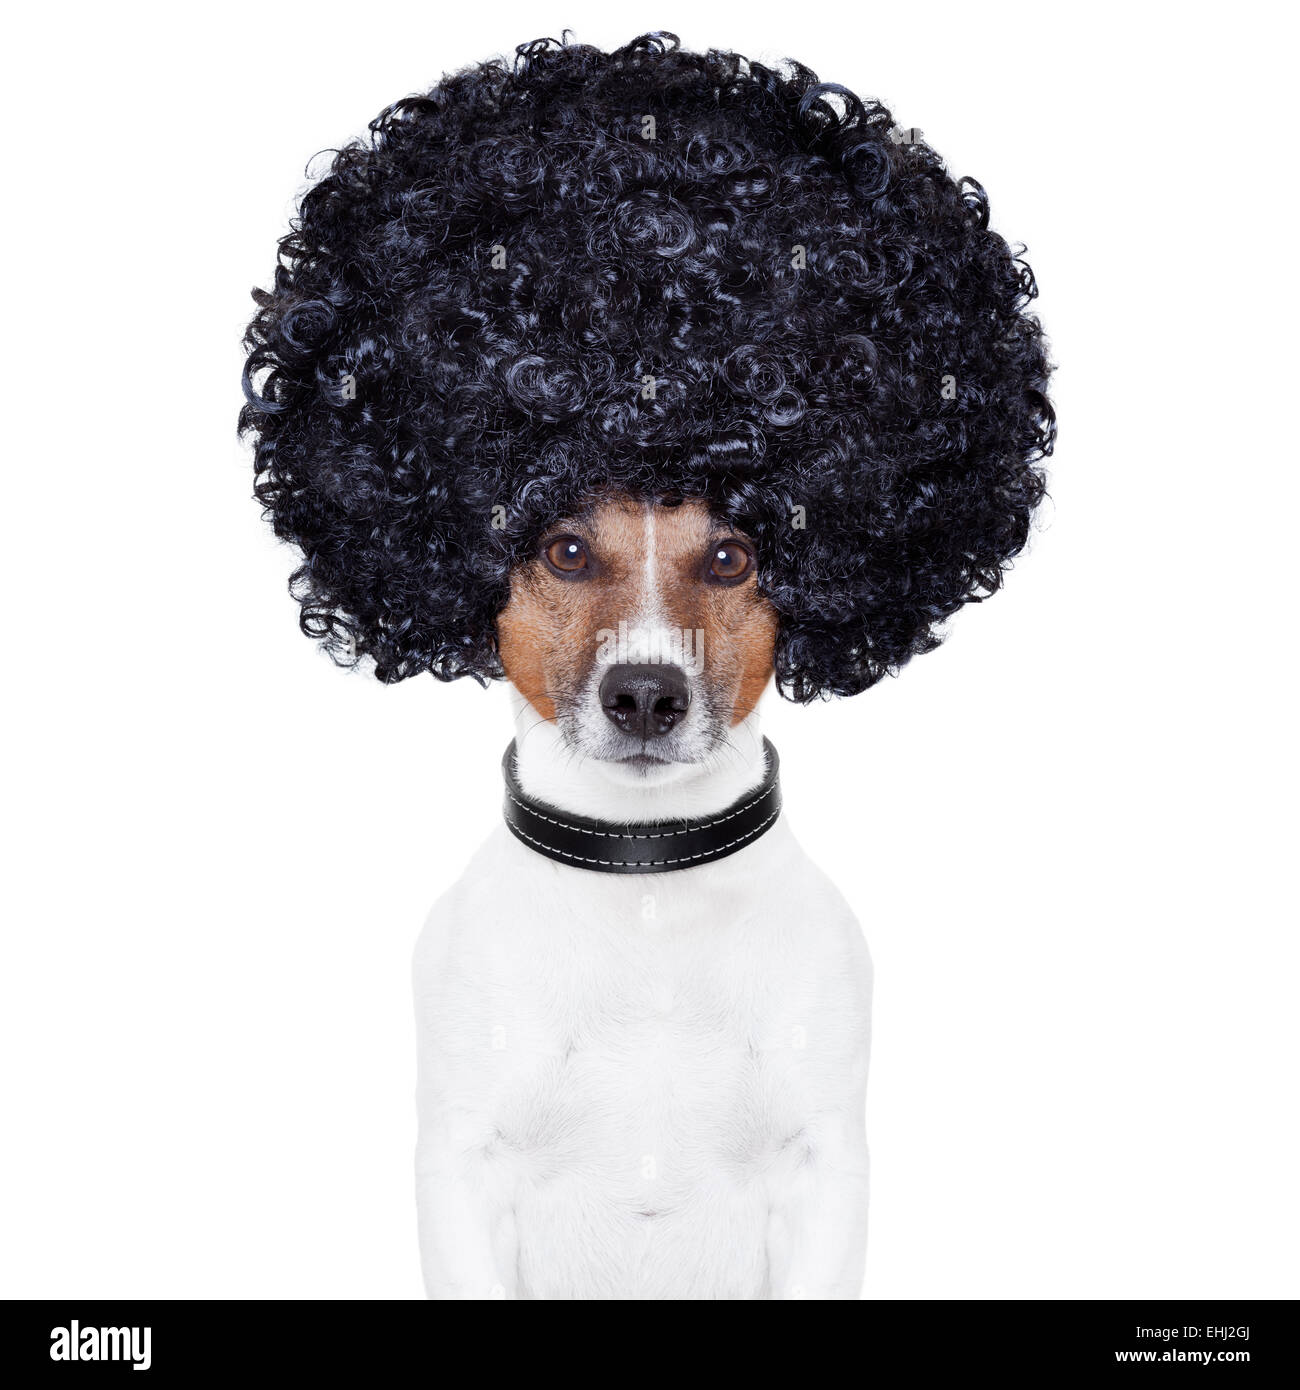 Afro Haare Hund komisch aussehen Stockfotografie - Alamy